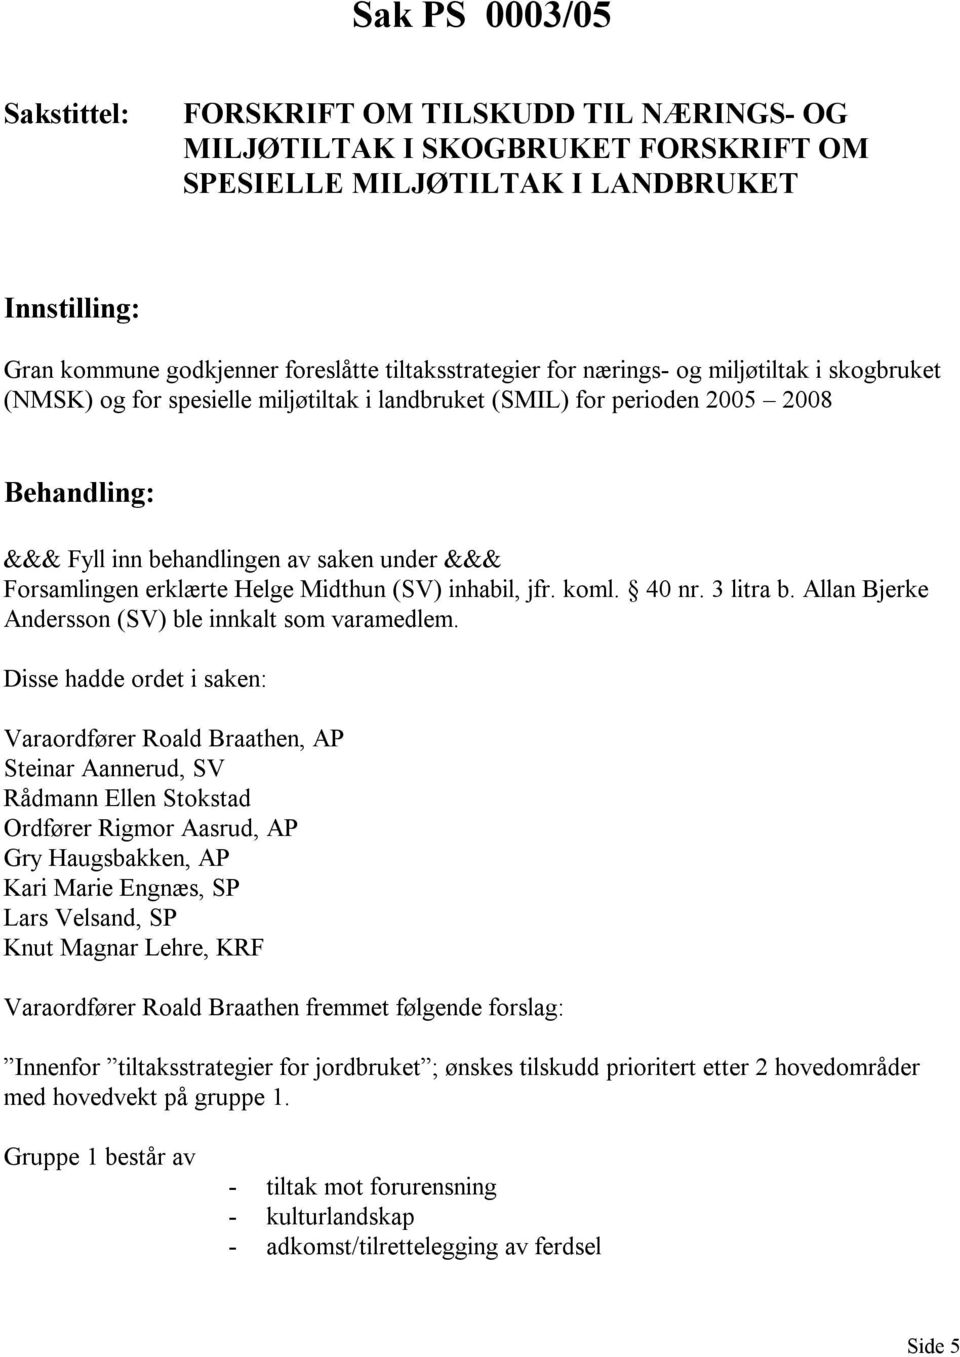 Forsamlingen erklærte Helge Midthun (SV) inhabil, jfr. koml. 40 nr. 3 litra b. Allan Bjerke Andersson (SV) ble innkalt som varamedlem.